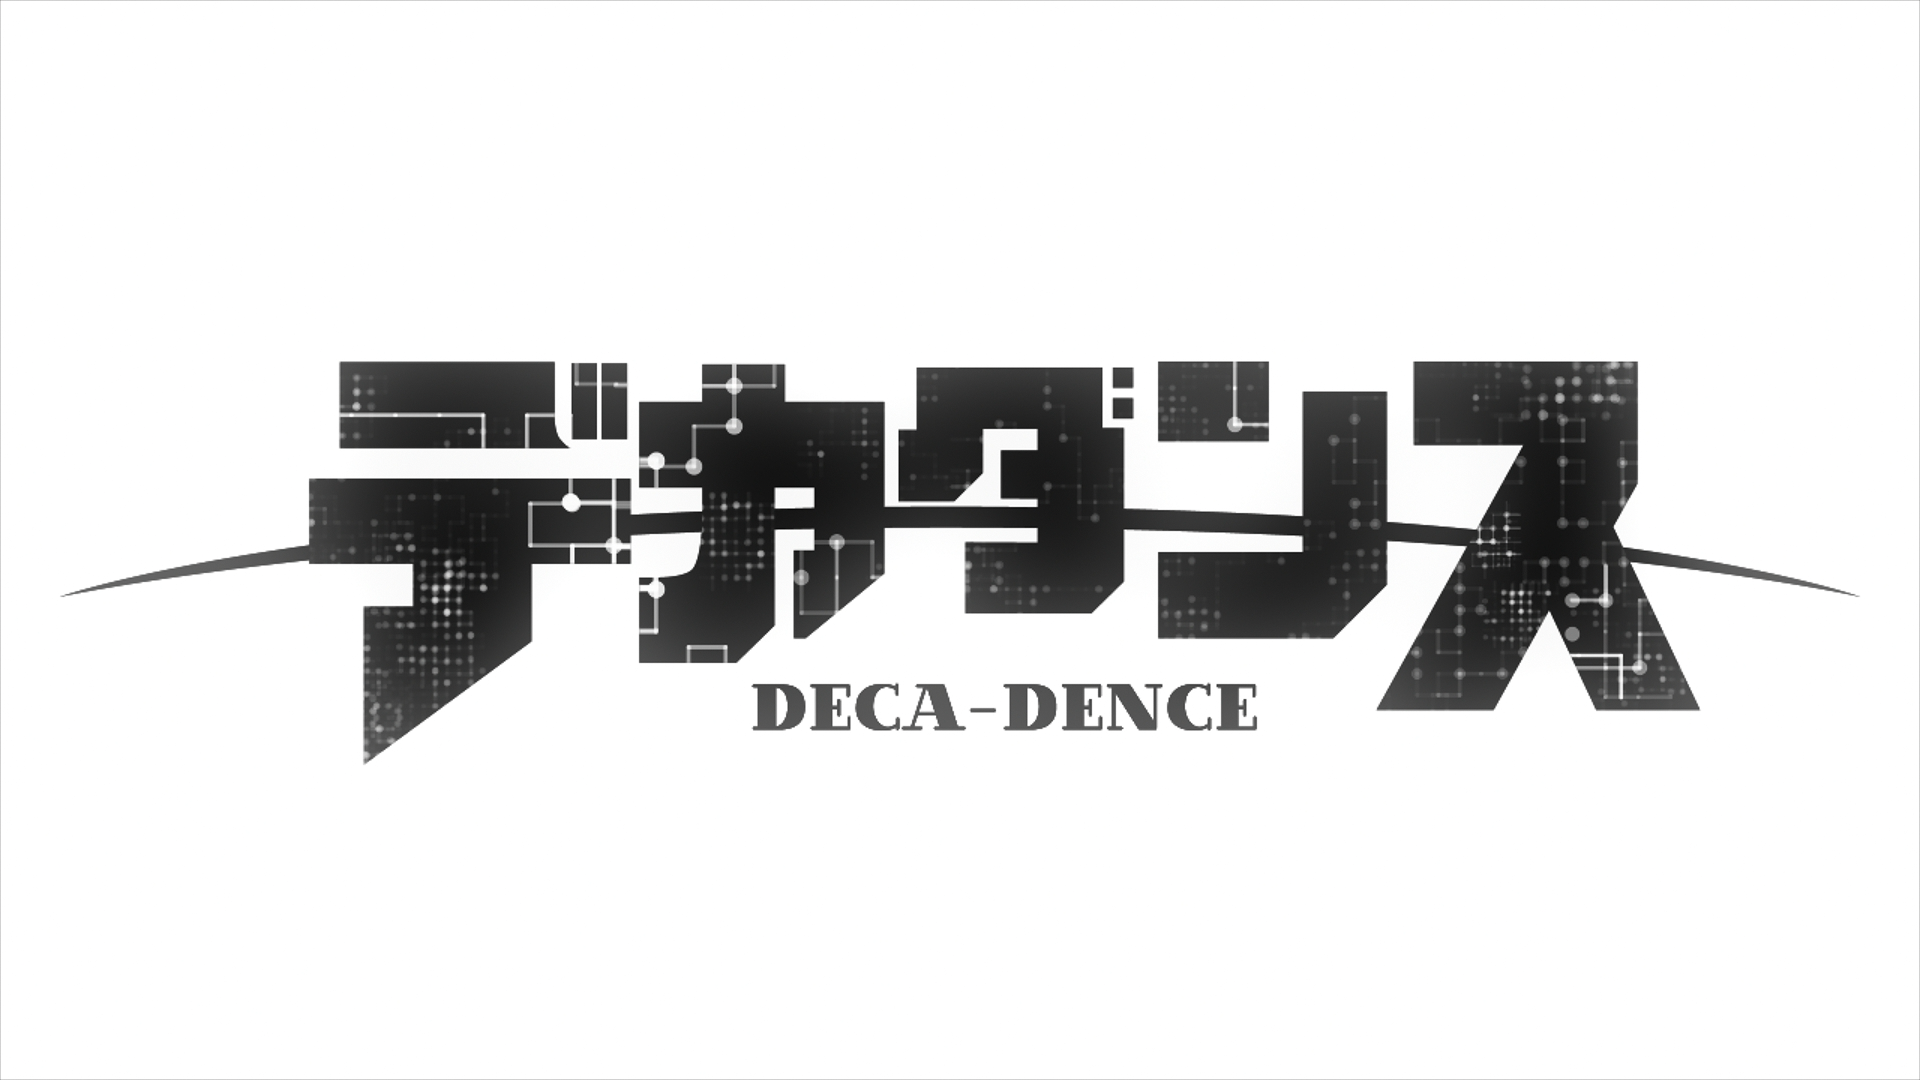 [豌豆字幕组&风之圣殿&LoliHouse] 没落要塞 / DECA-DENCE / デカダンス [BDRip 1080p HEVC-10bit FLAC]插图icecomic动漫-云之彼端,约定的地方(´･ᴗ･`)1